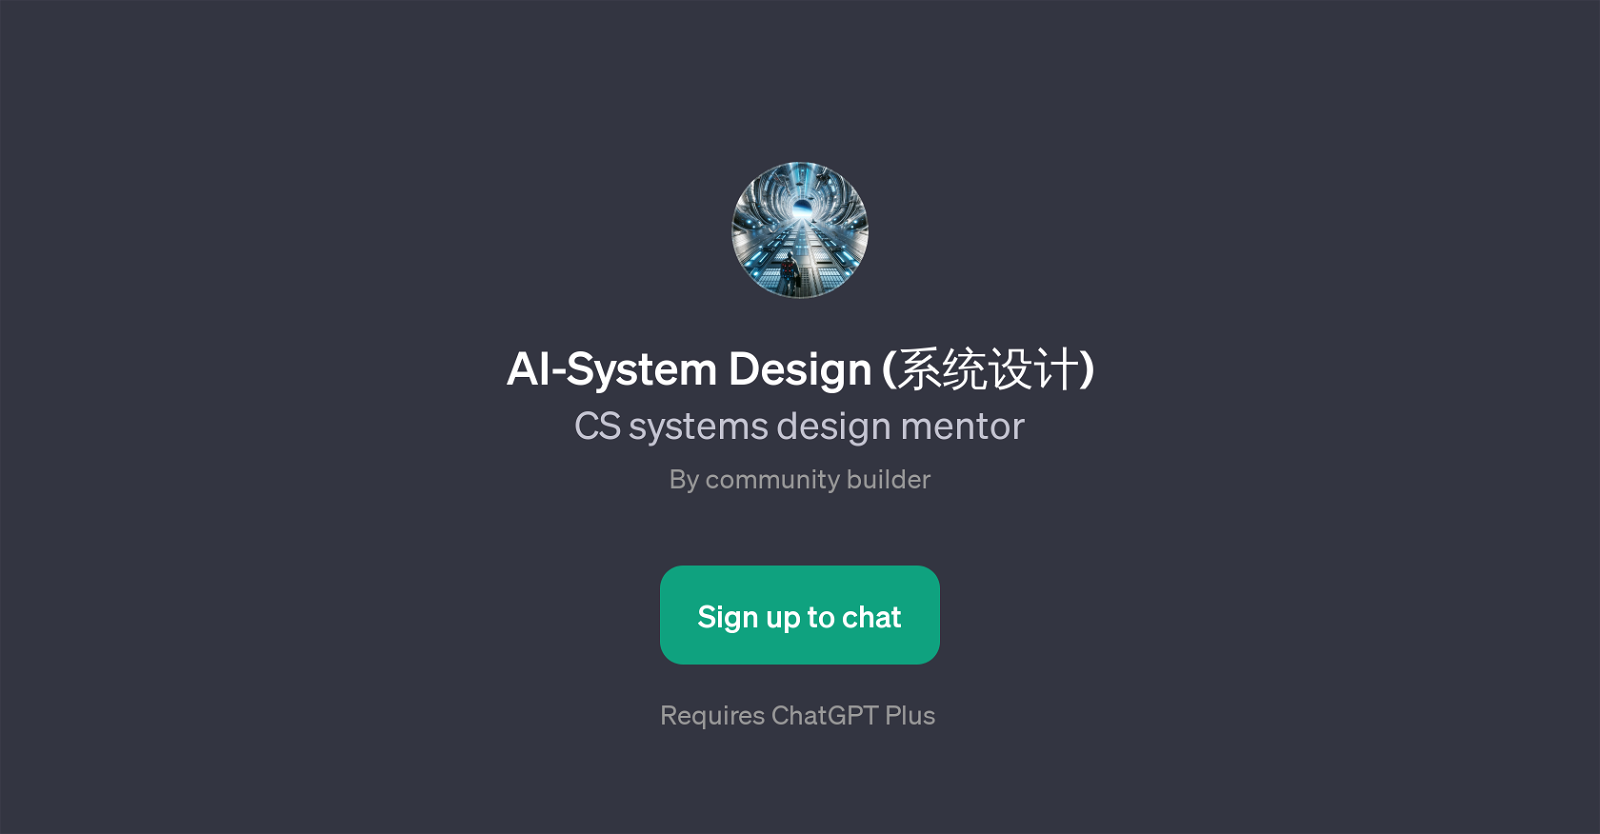 AI-System Design () website